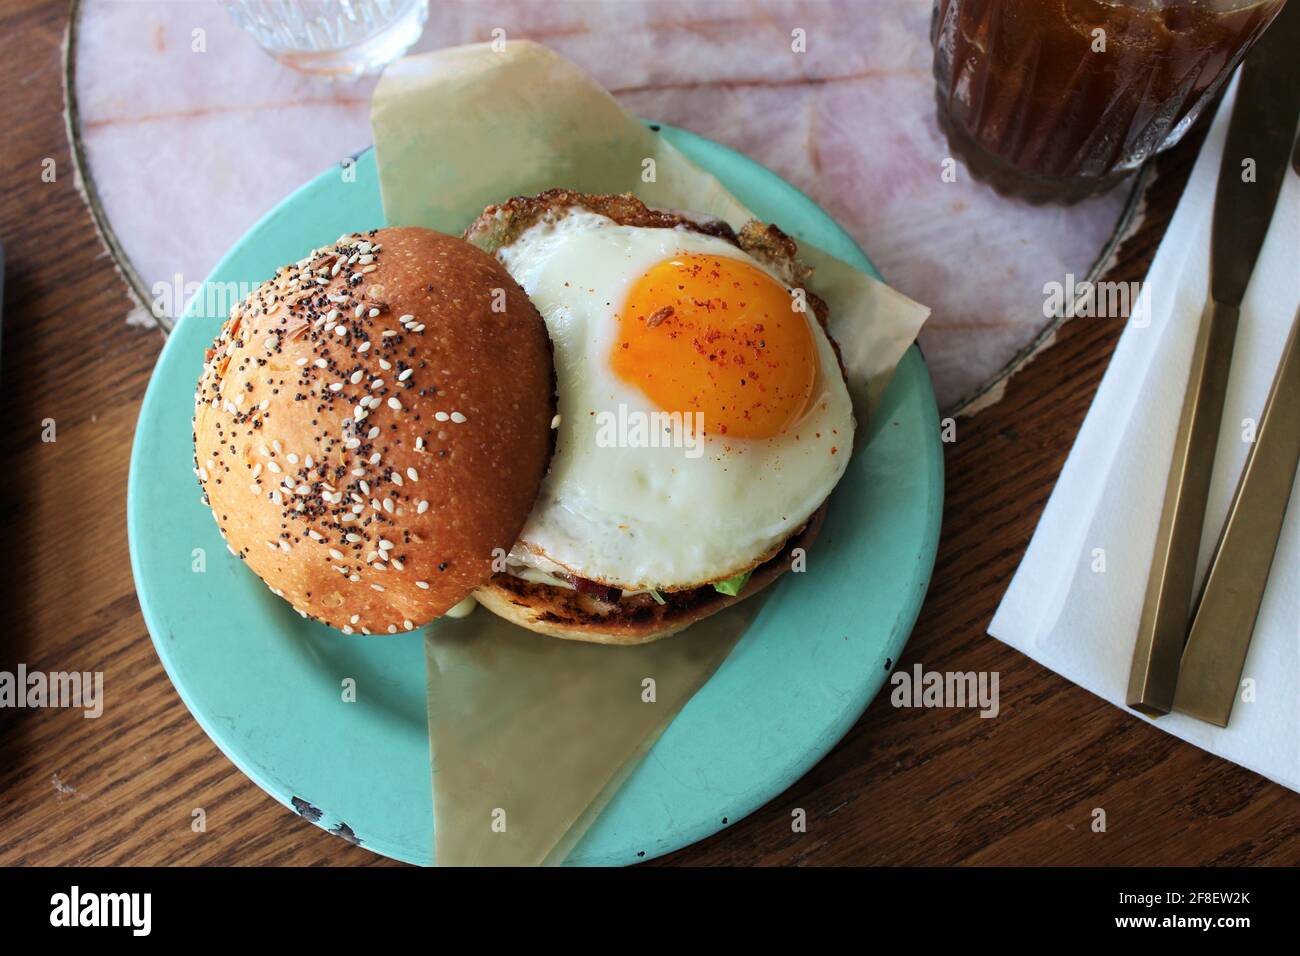 Heißer, leckerer Burger mit Ei auf der sonnigen Seite auf einem Brioche-Brötchen mit Mohnsamen und Gewürzen auf einem blaugrün gefärbten Teller. Stockfoto